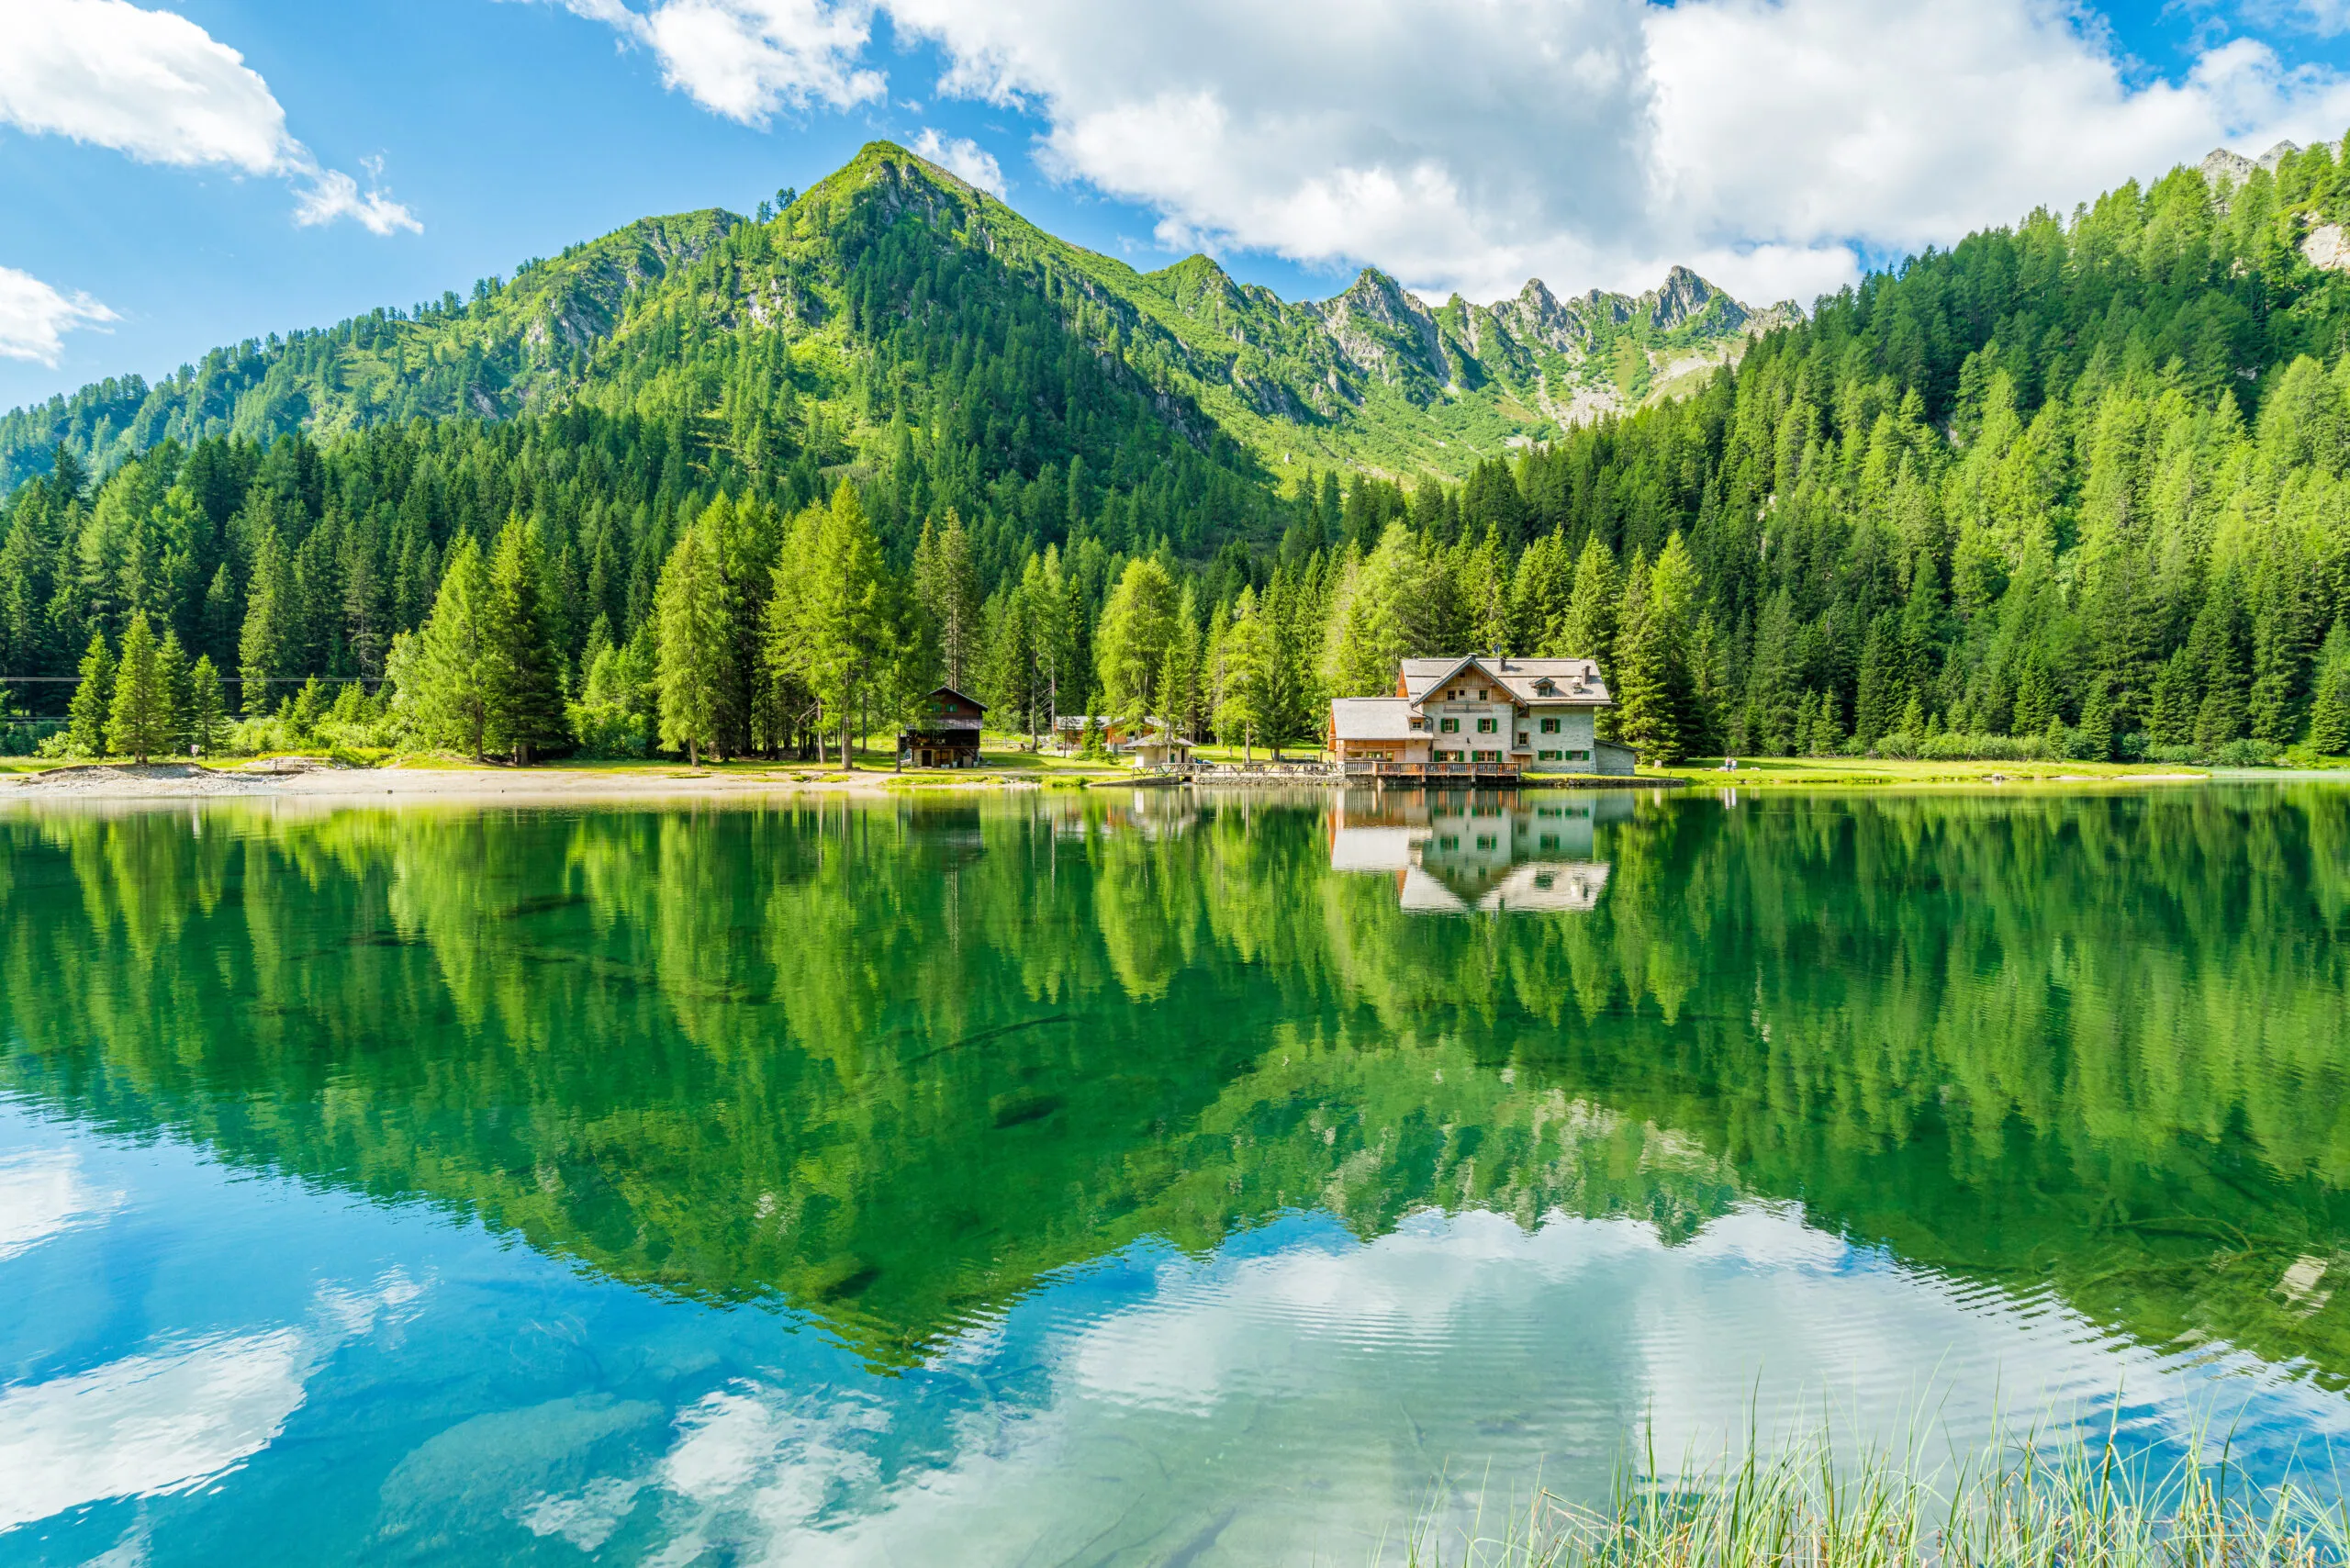 Idyllic landscape at Lake Nambino, near Madonna di Campiglio. Province of Trento, Trentino Alto Adige, northern Italy.